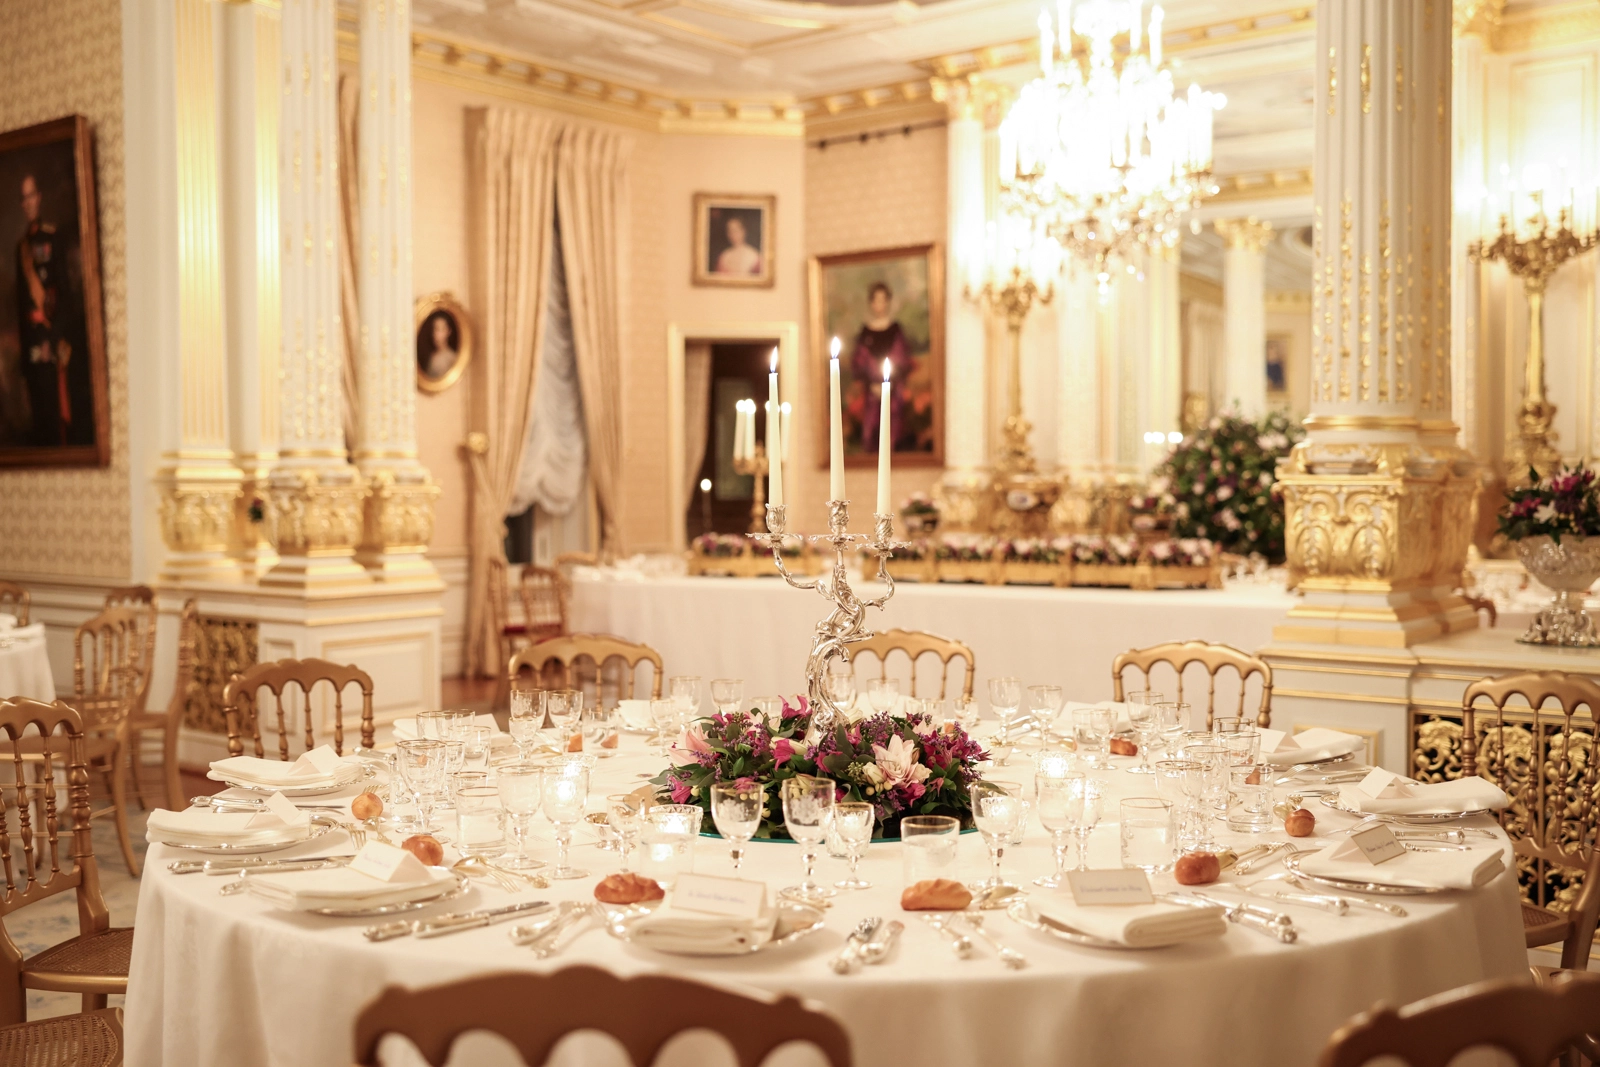 An diesen feierlichen Tafeln durften die Gäste speisen. © Maison du Grand-Duc / Sophie Margue